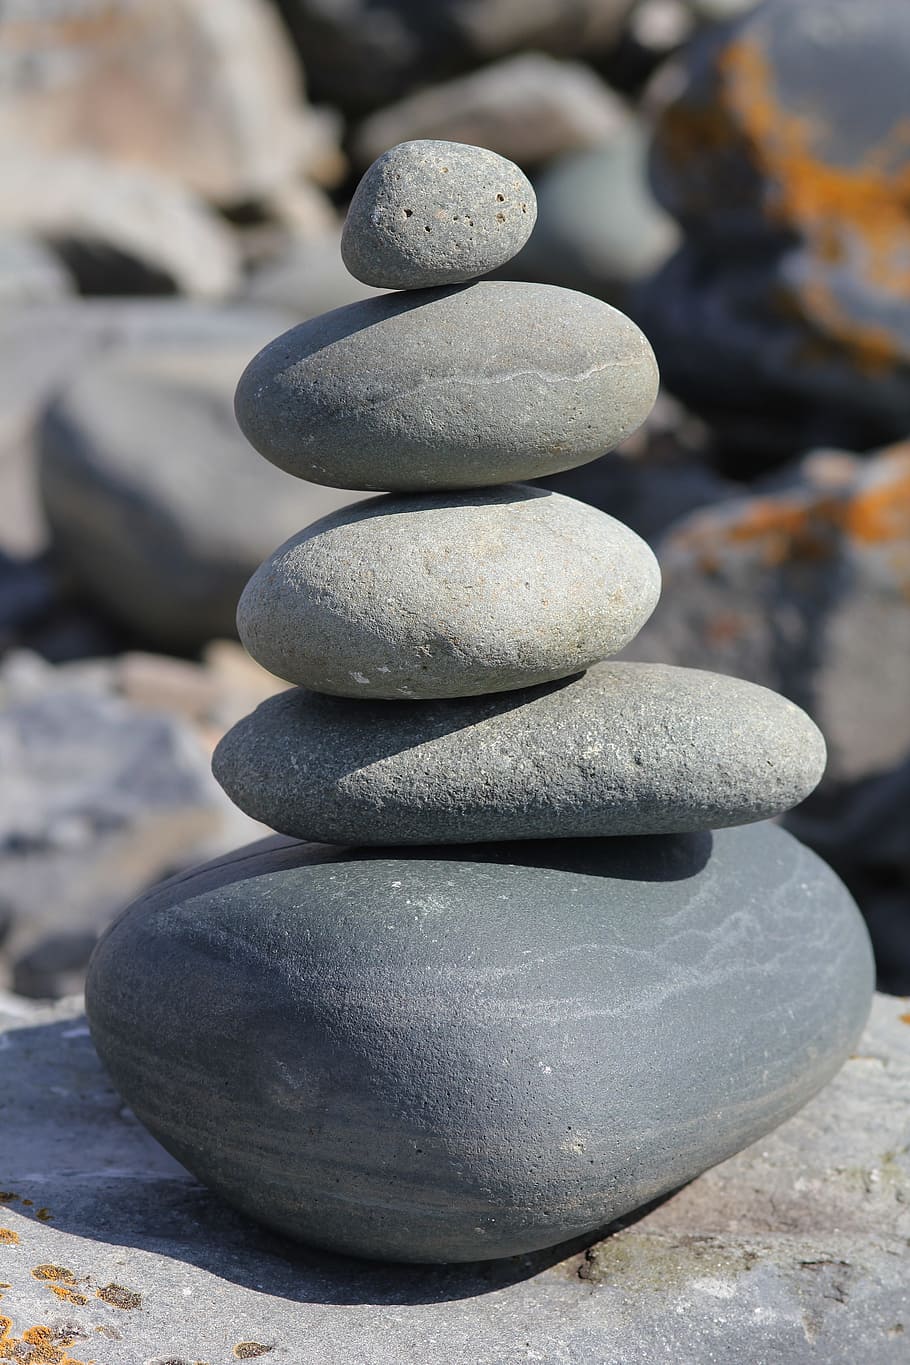 HD wallpaper: rocks, stacked, stones, rock, balance, balancing, boulder,  close -up | Wallpaper Flare